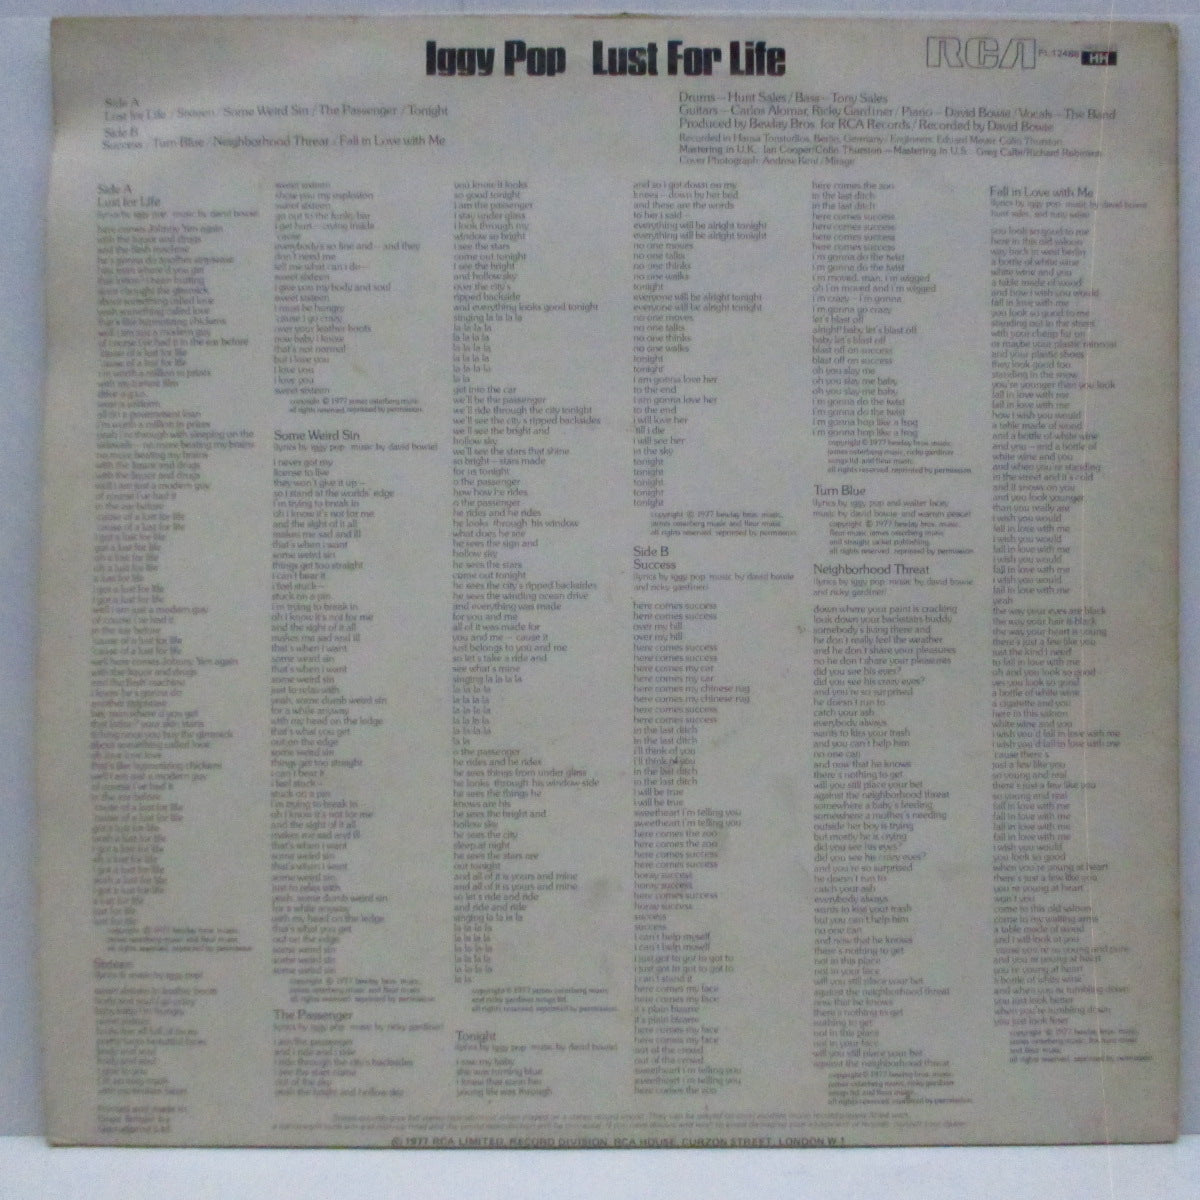 IGGY POP (イギー・ポップ)  - Lust For Life (UK 初回オリジナル「オレンジラベ」LP/PL-12488)